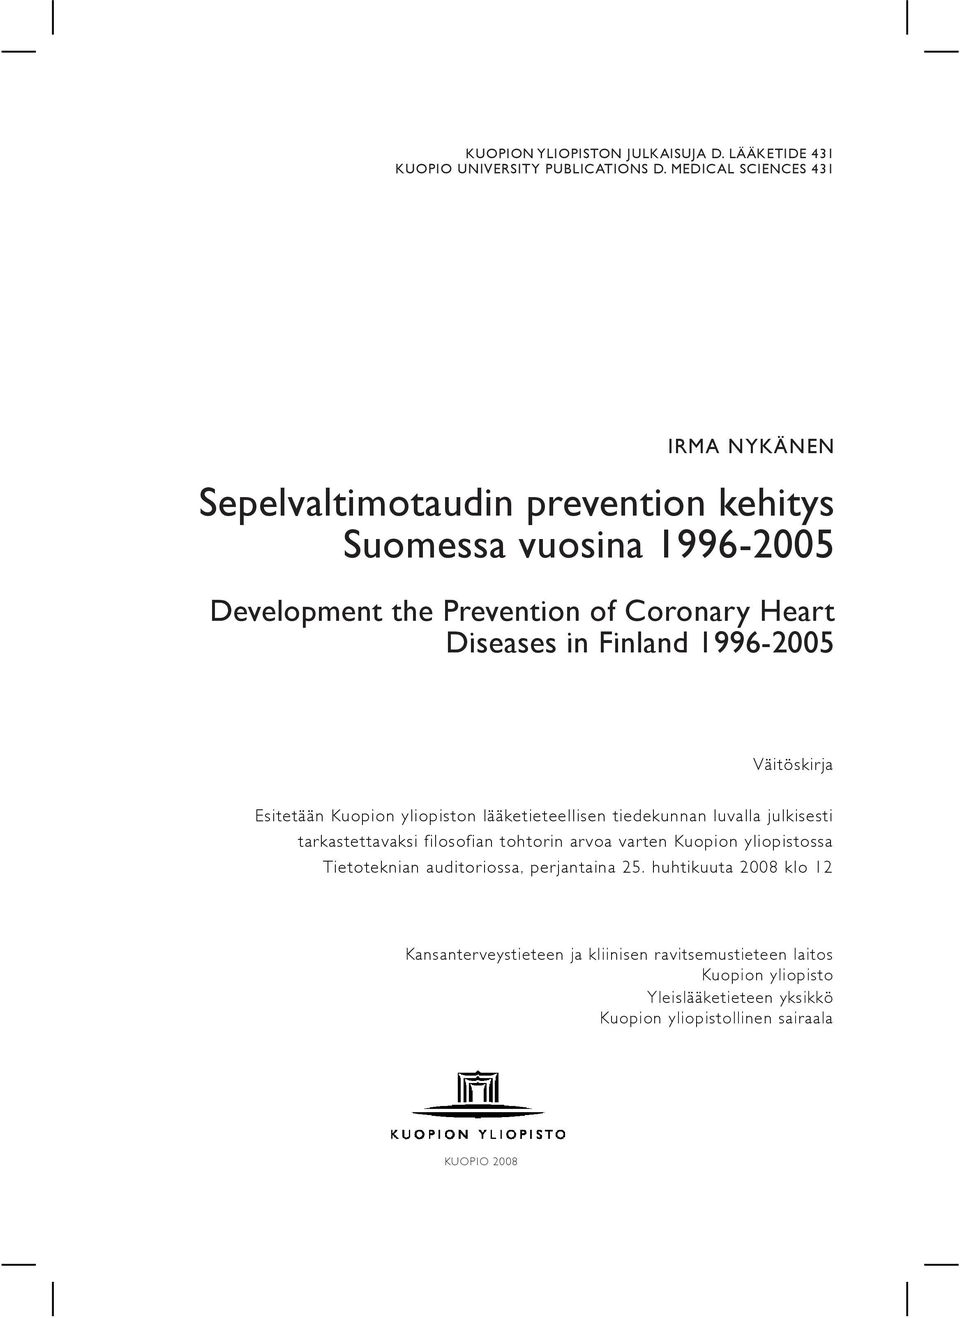 Finland 1996-2005 Väitöskirja Esitetään Kuopion yliopiston lääketieteellisen tiedekunnan luvalla julkisesti tarkastettavaksi filosofian tohtorin arvoa varten